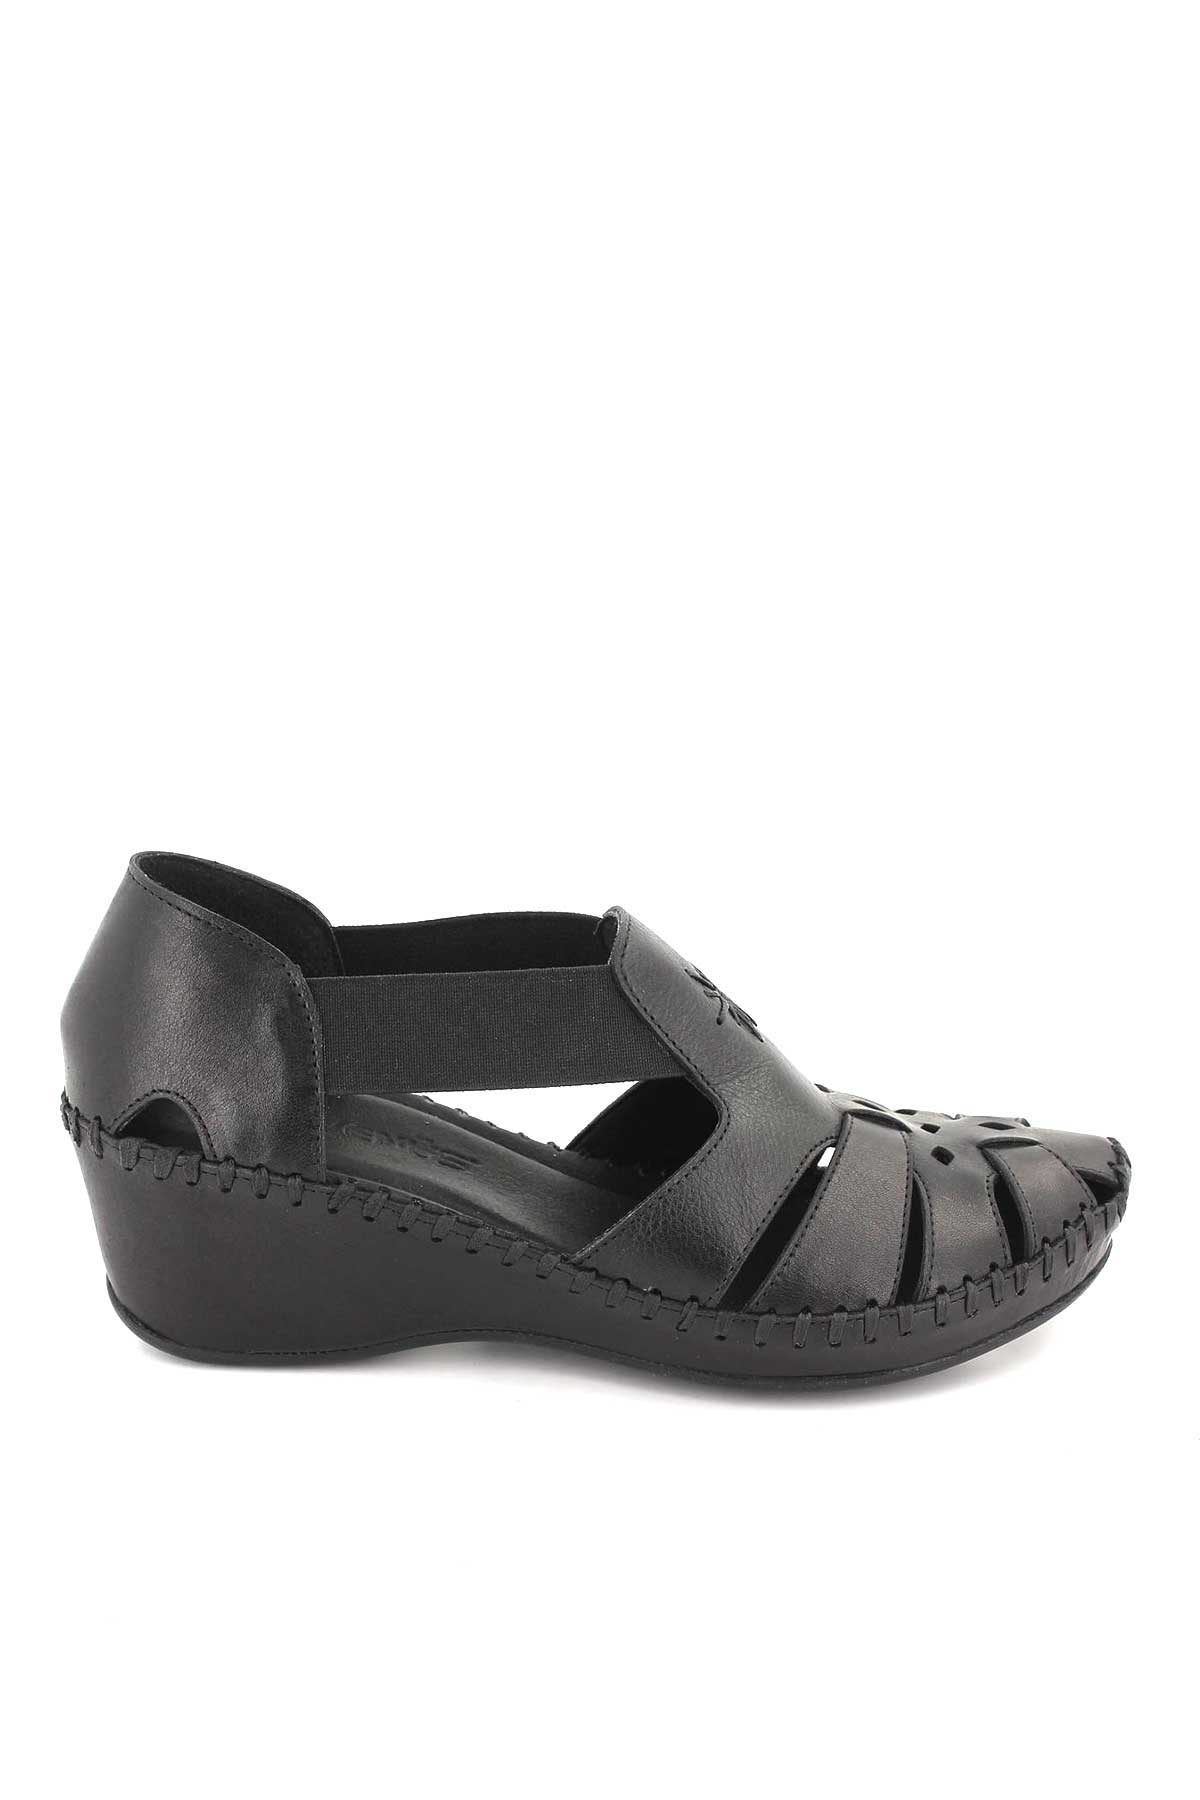 Kadın Comfort Deri Sandalet Siyah 18793056